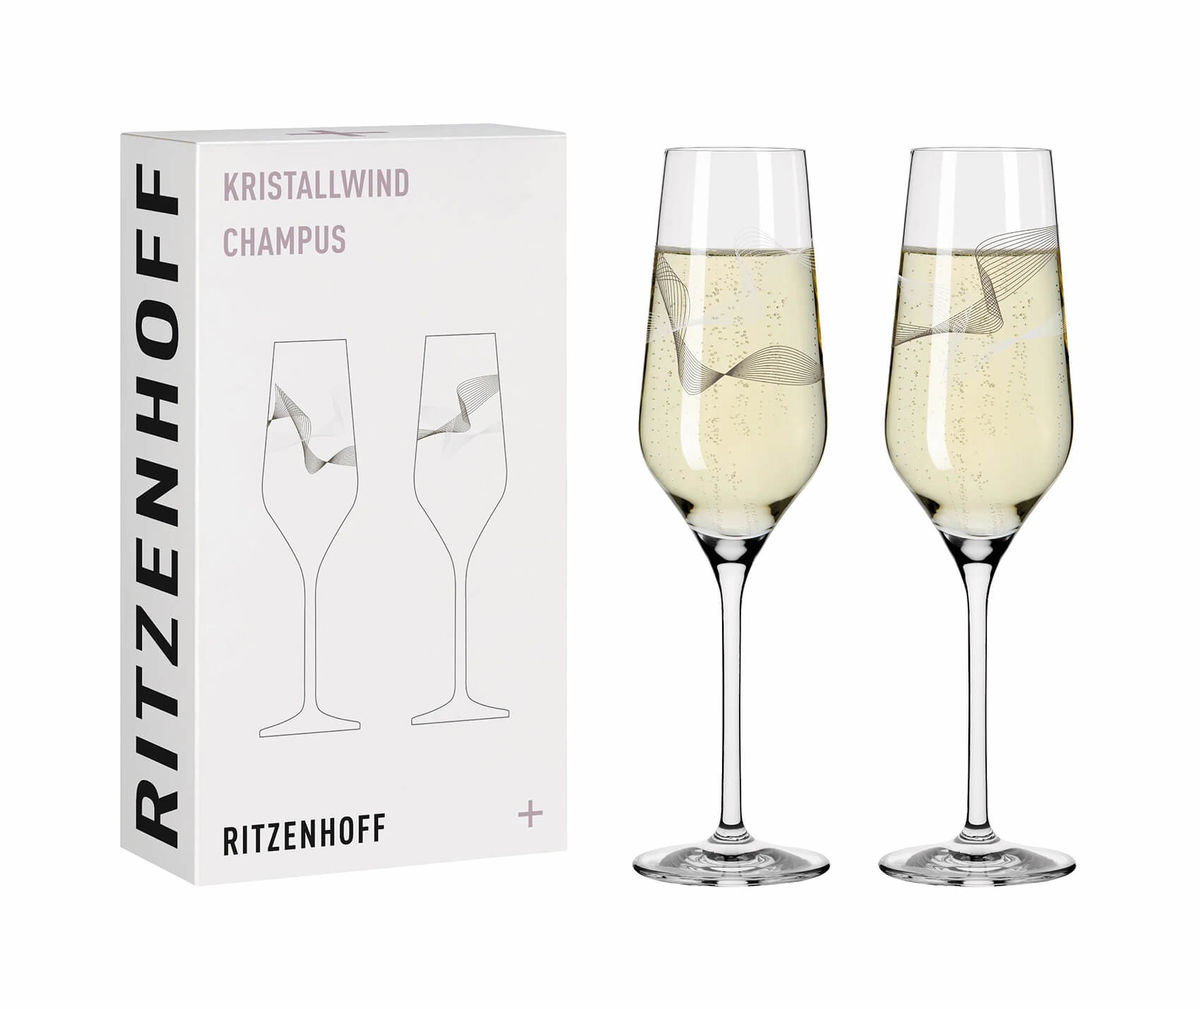 Image of Ritzenhoff Kristallwind no2 Champagnerglas 2erSet bei nettoshop.ch